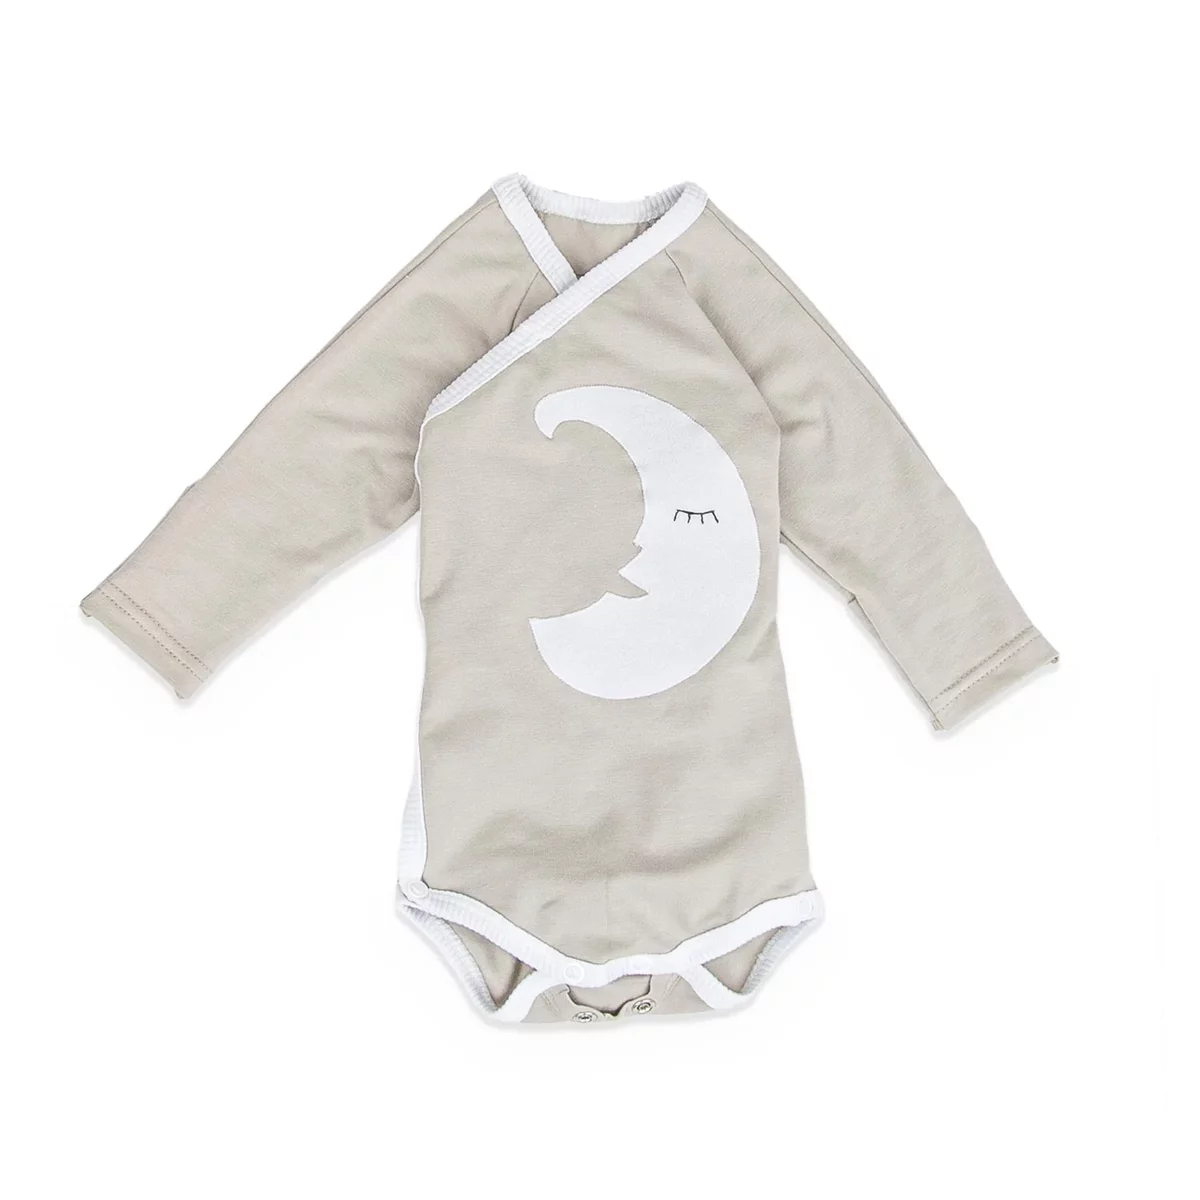 Bequemer Baby Wickelbody in Grau-Beige mit Langarm und zartem Monddesign, aus Bio-Baumwolle, sanft zur Babyhaut